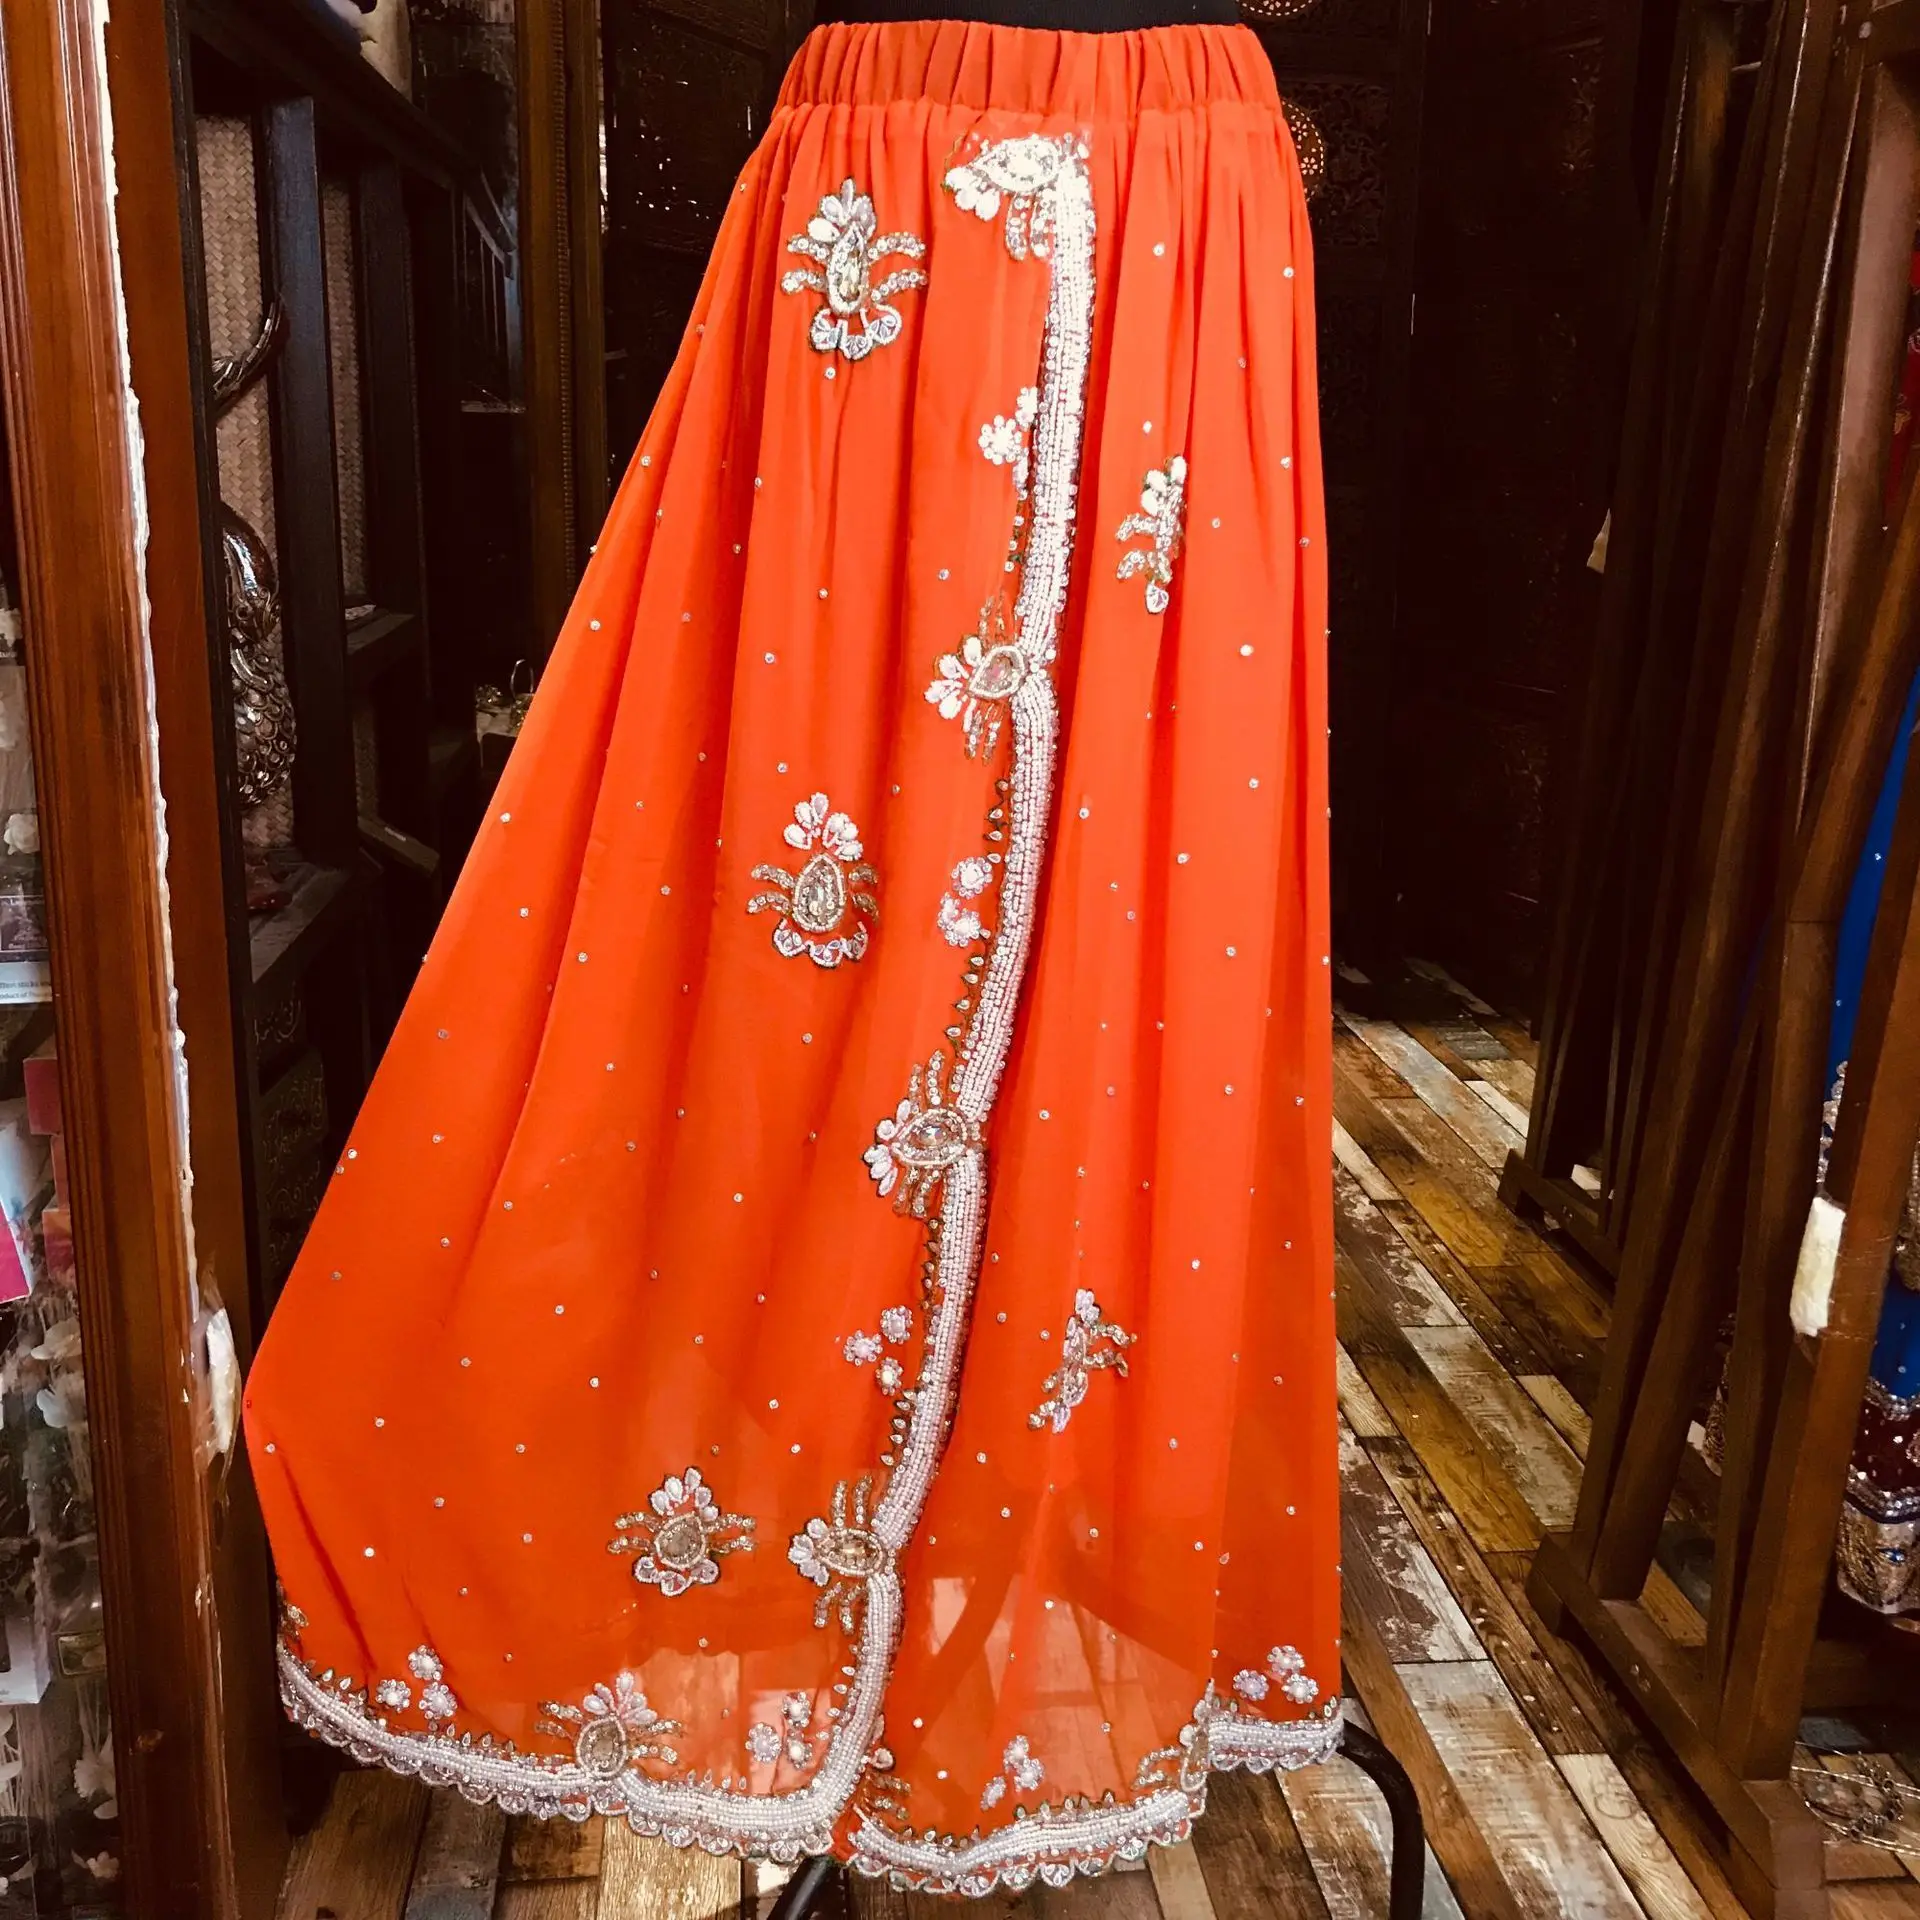 Сари африканские платья для женщин в Индии вышитый бисером вышивка сари юбка индийское платье сари пакистан бесплатно шальвар